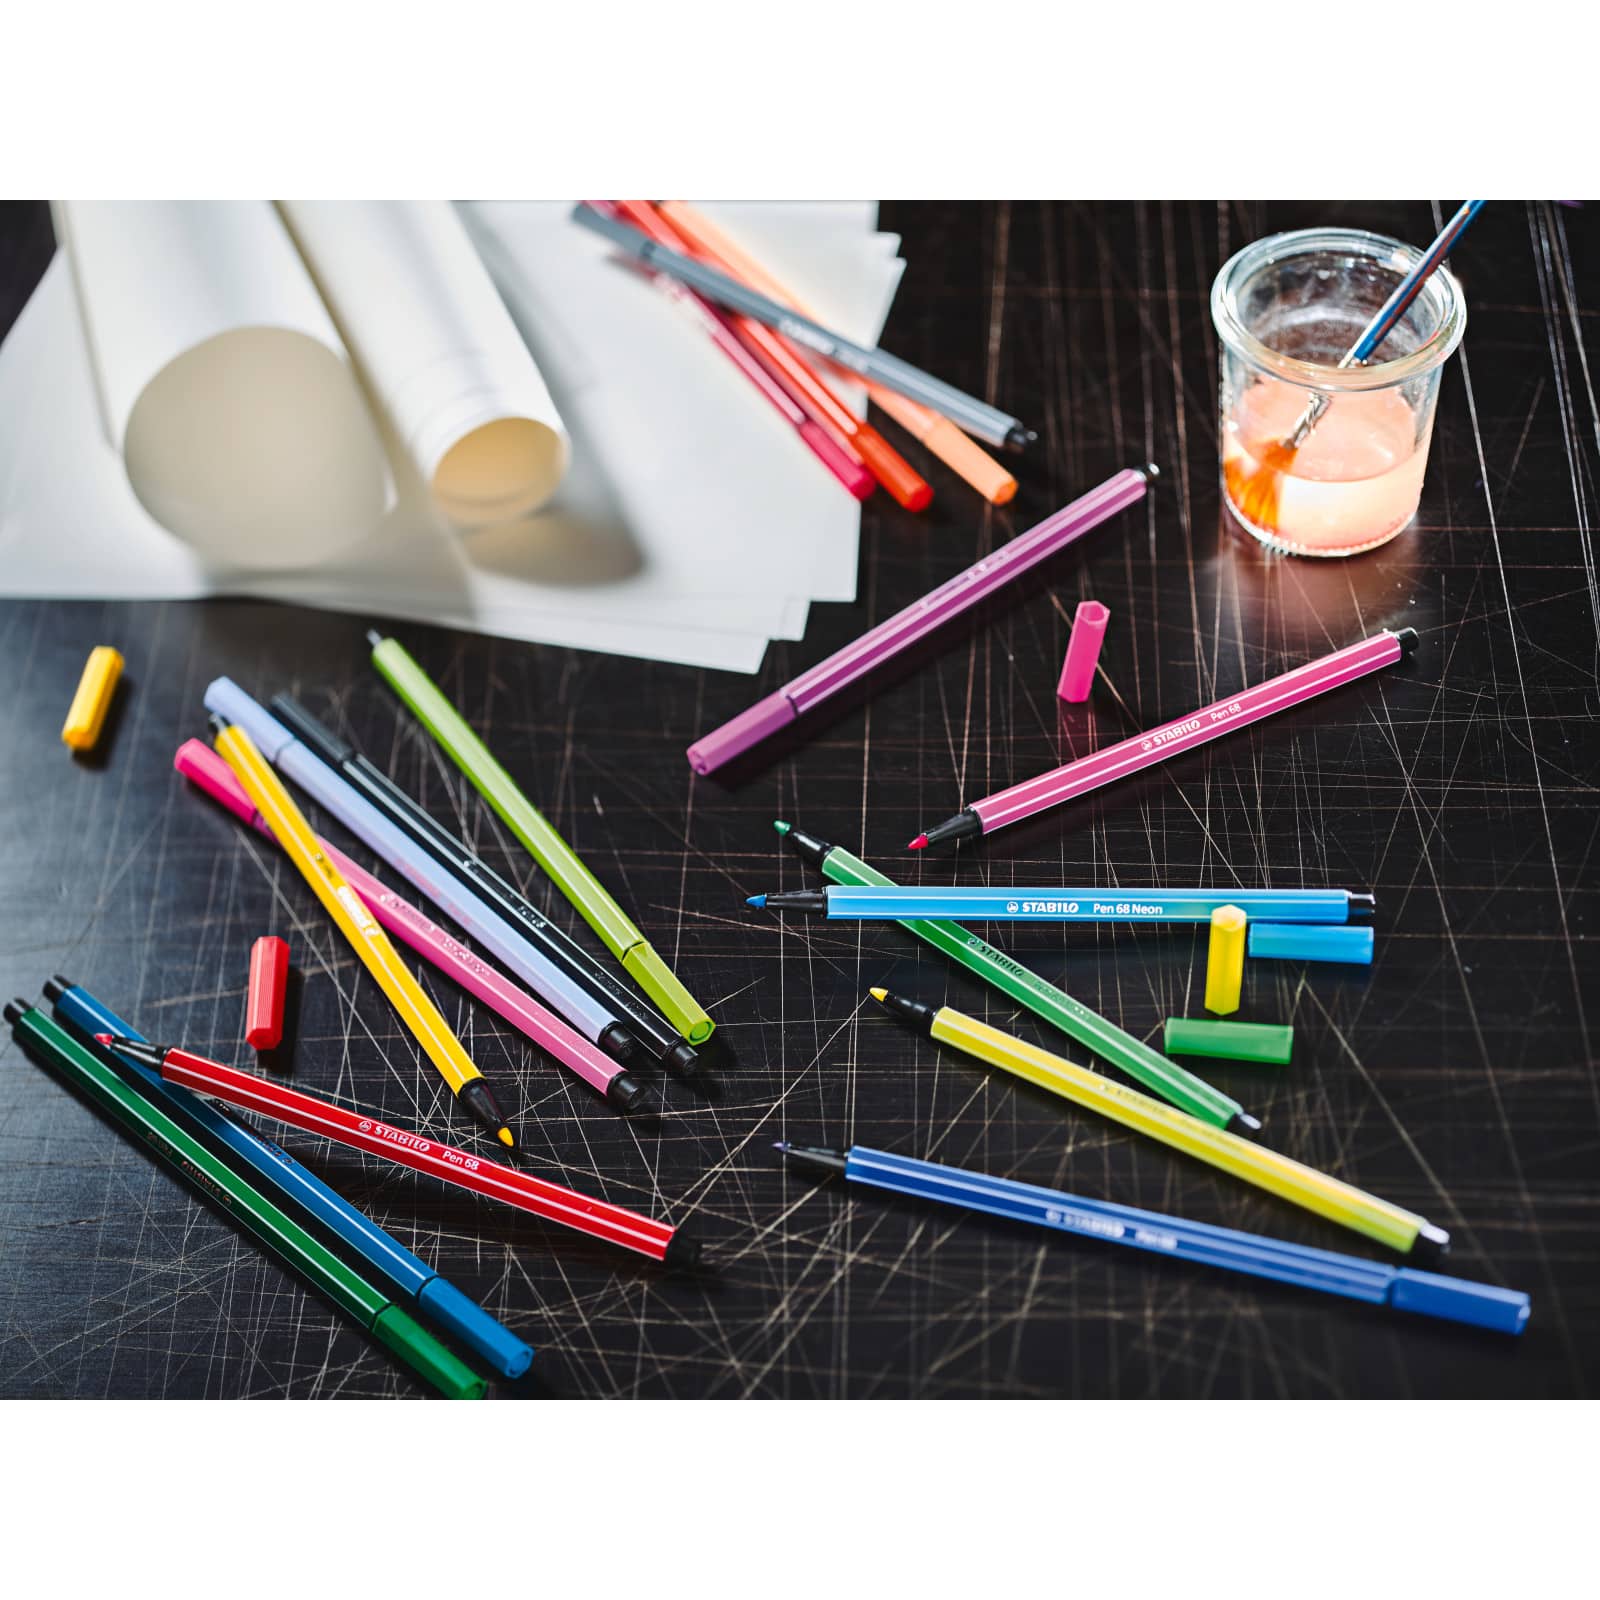 STABILO&#xAE; ARTY Pen 68 65-Pen Set